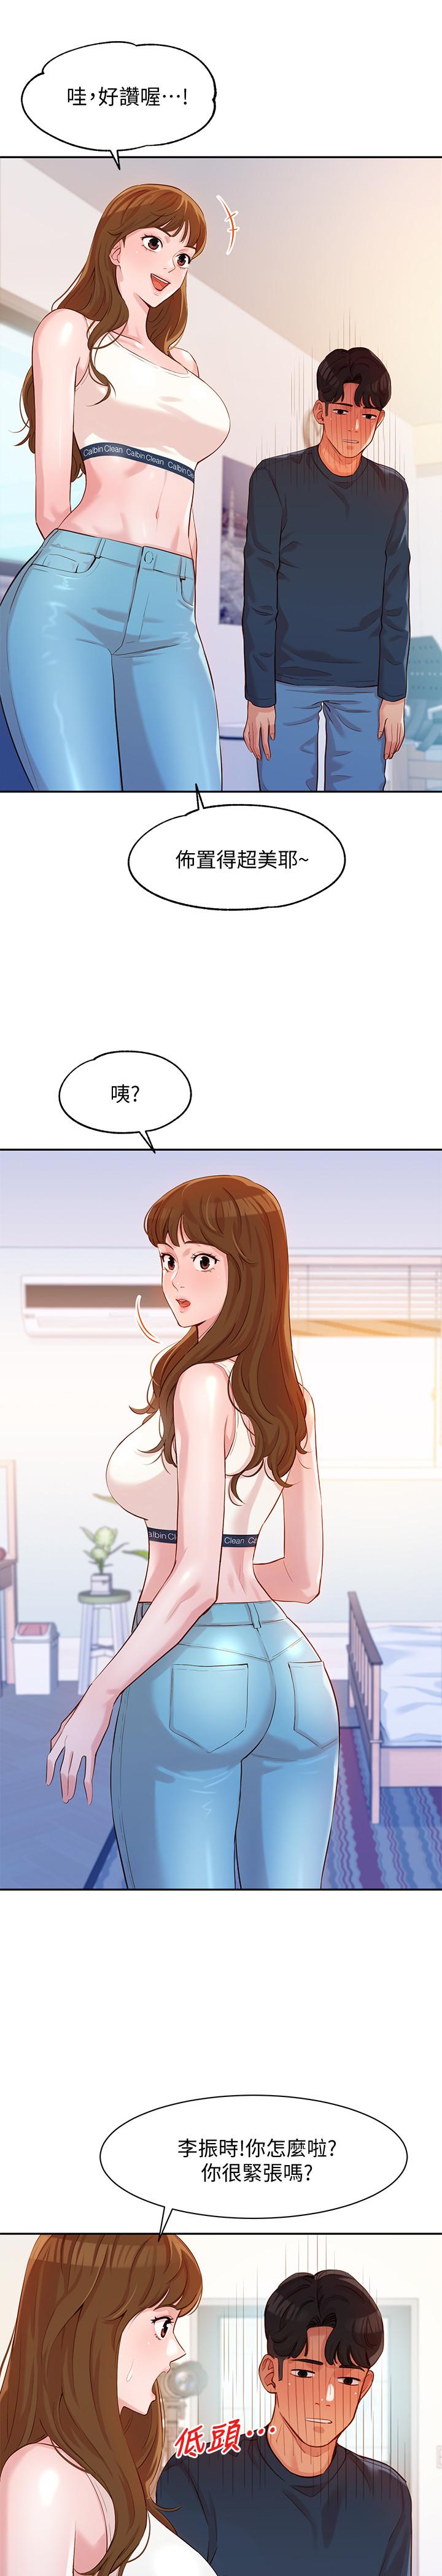 韩国污漫画 女神寫真 第8话-屁股就在眼前 27